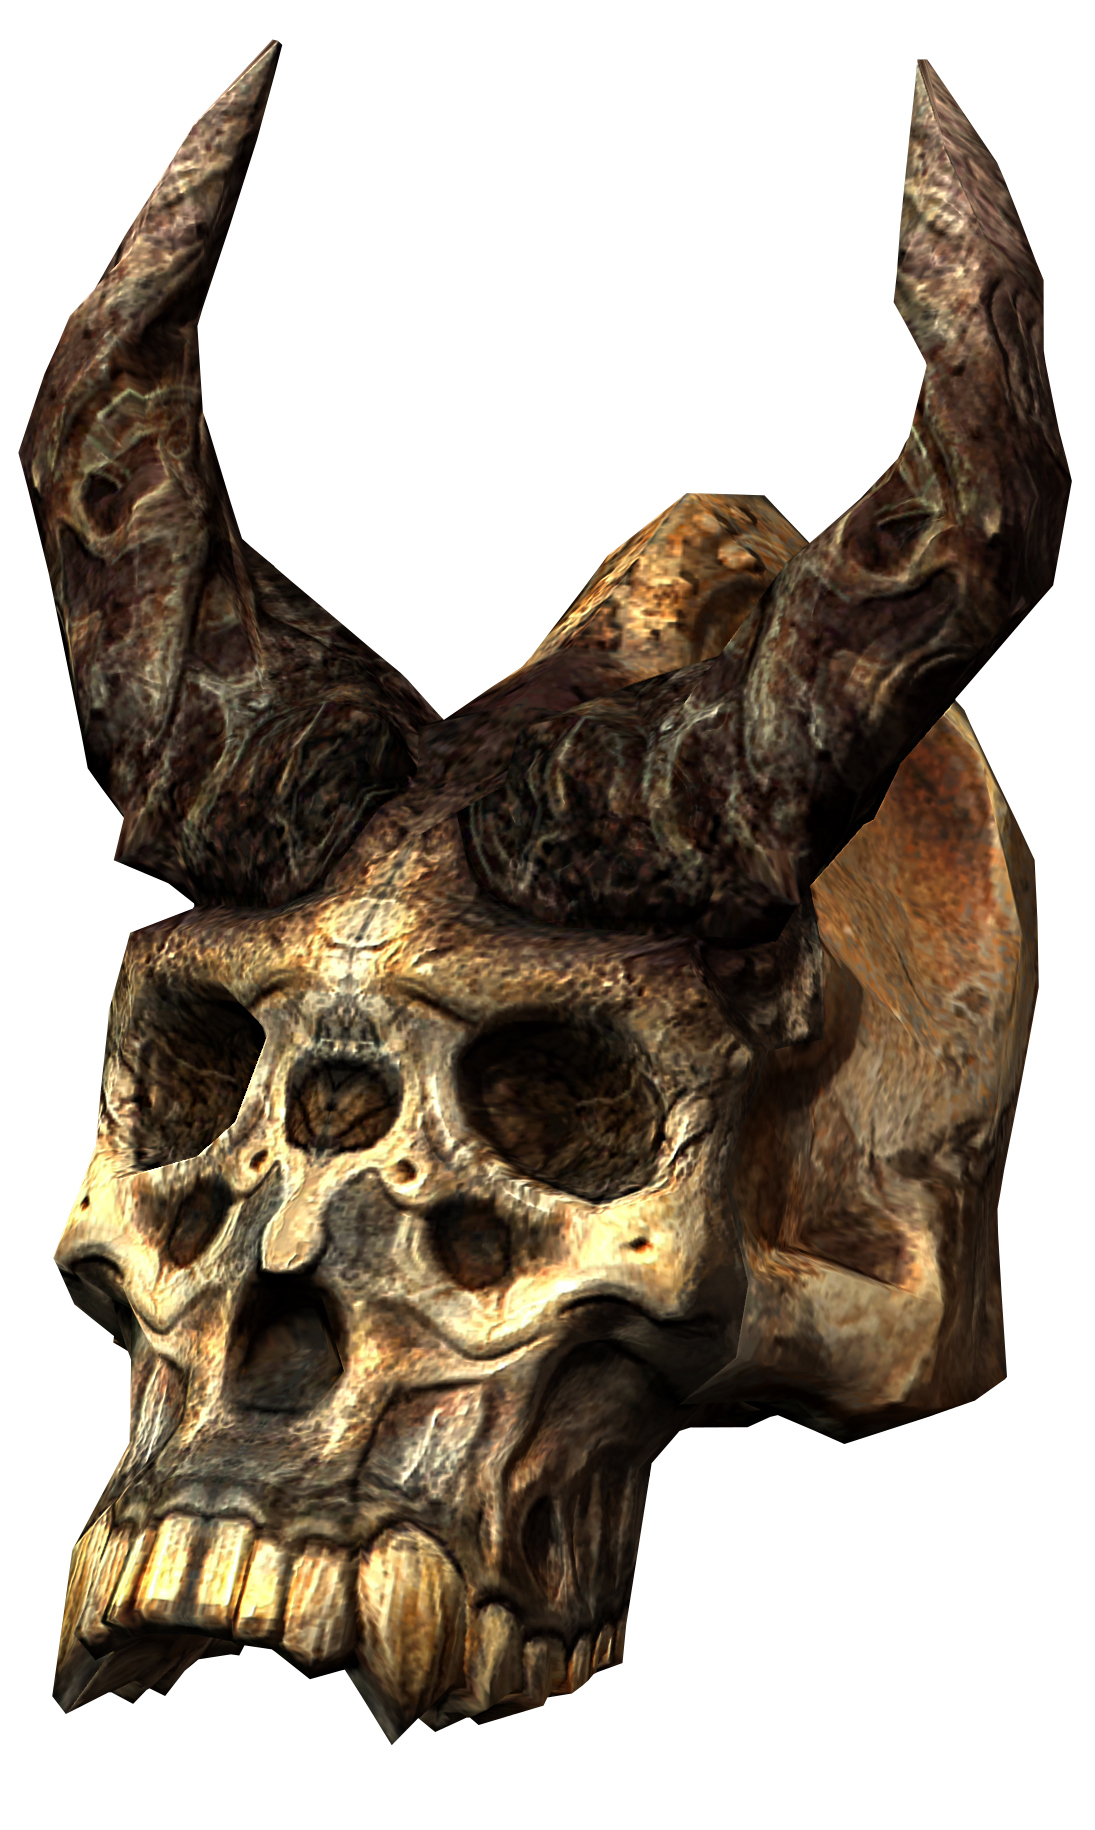 Karstaag's Skull, Legacy of the Dragonborn